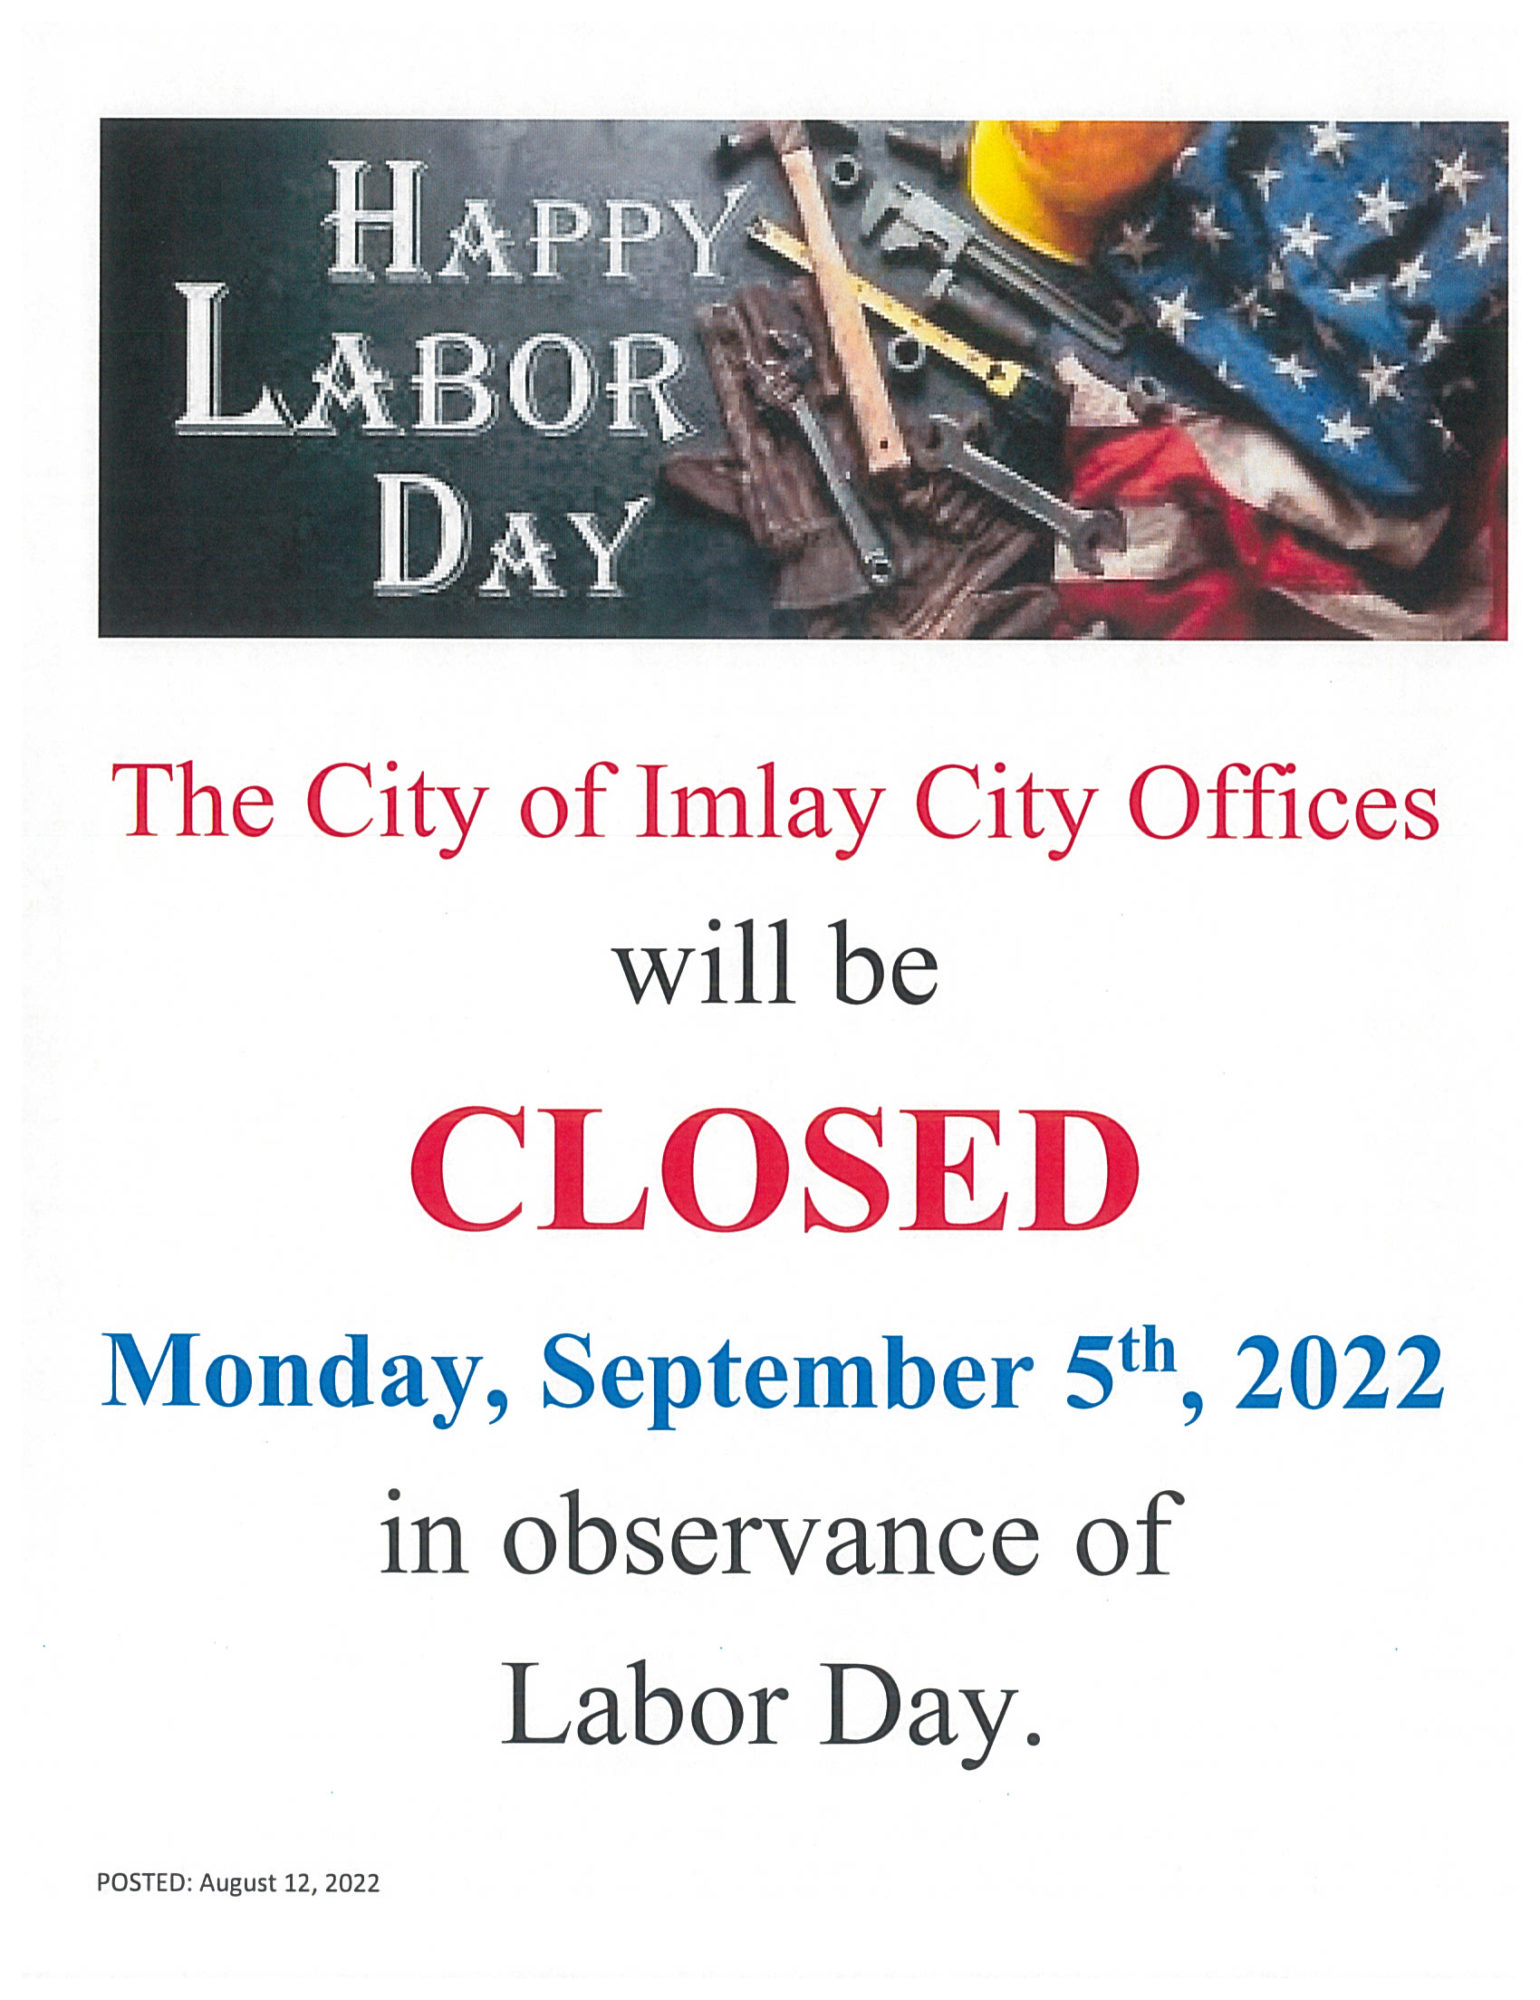 labor day closed